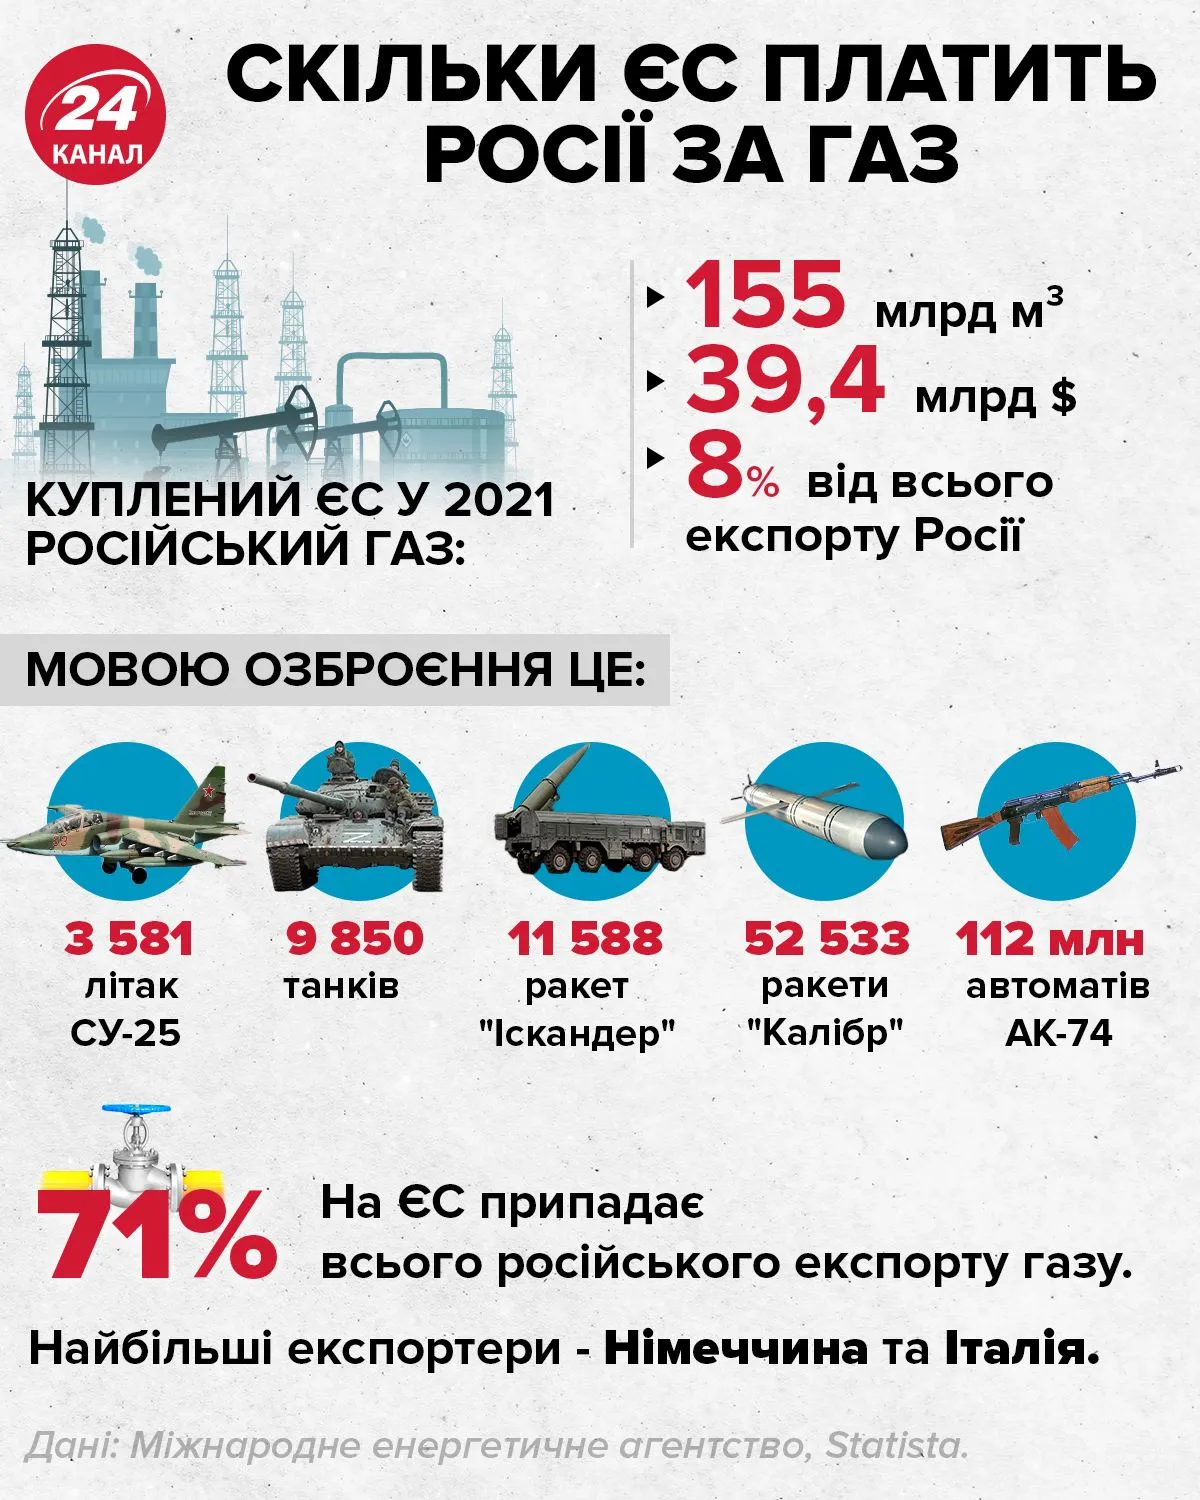 Сколько ЕС платит за российский газ